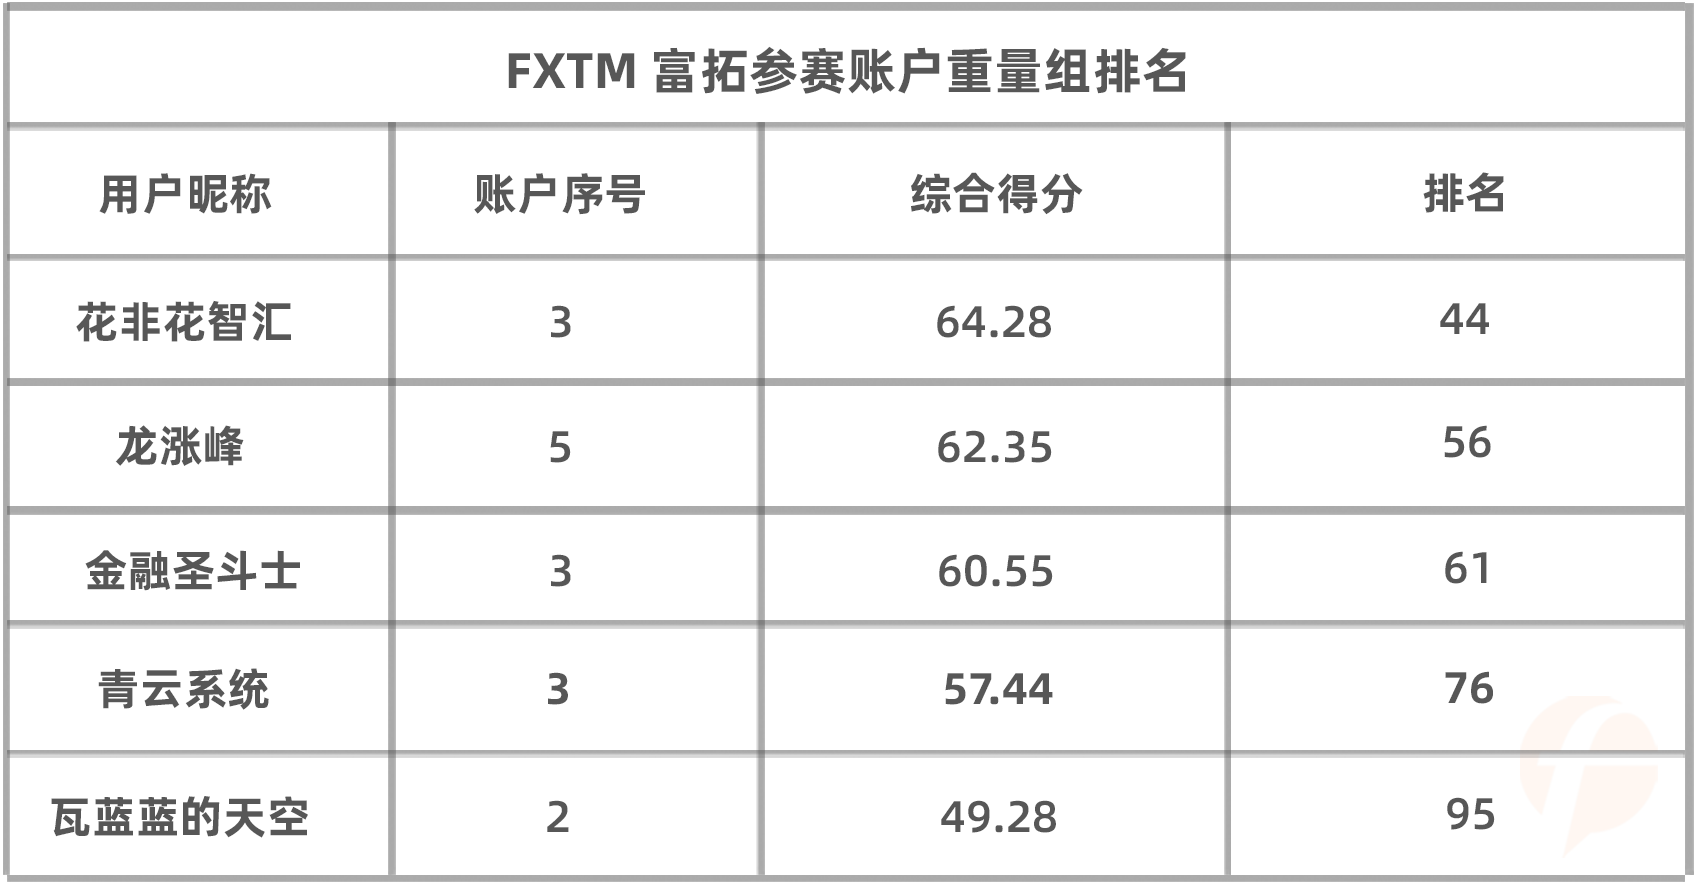 最后两天，FXTM 富拓组的千元奖励将花落谁家？